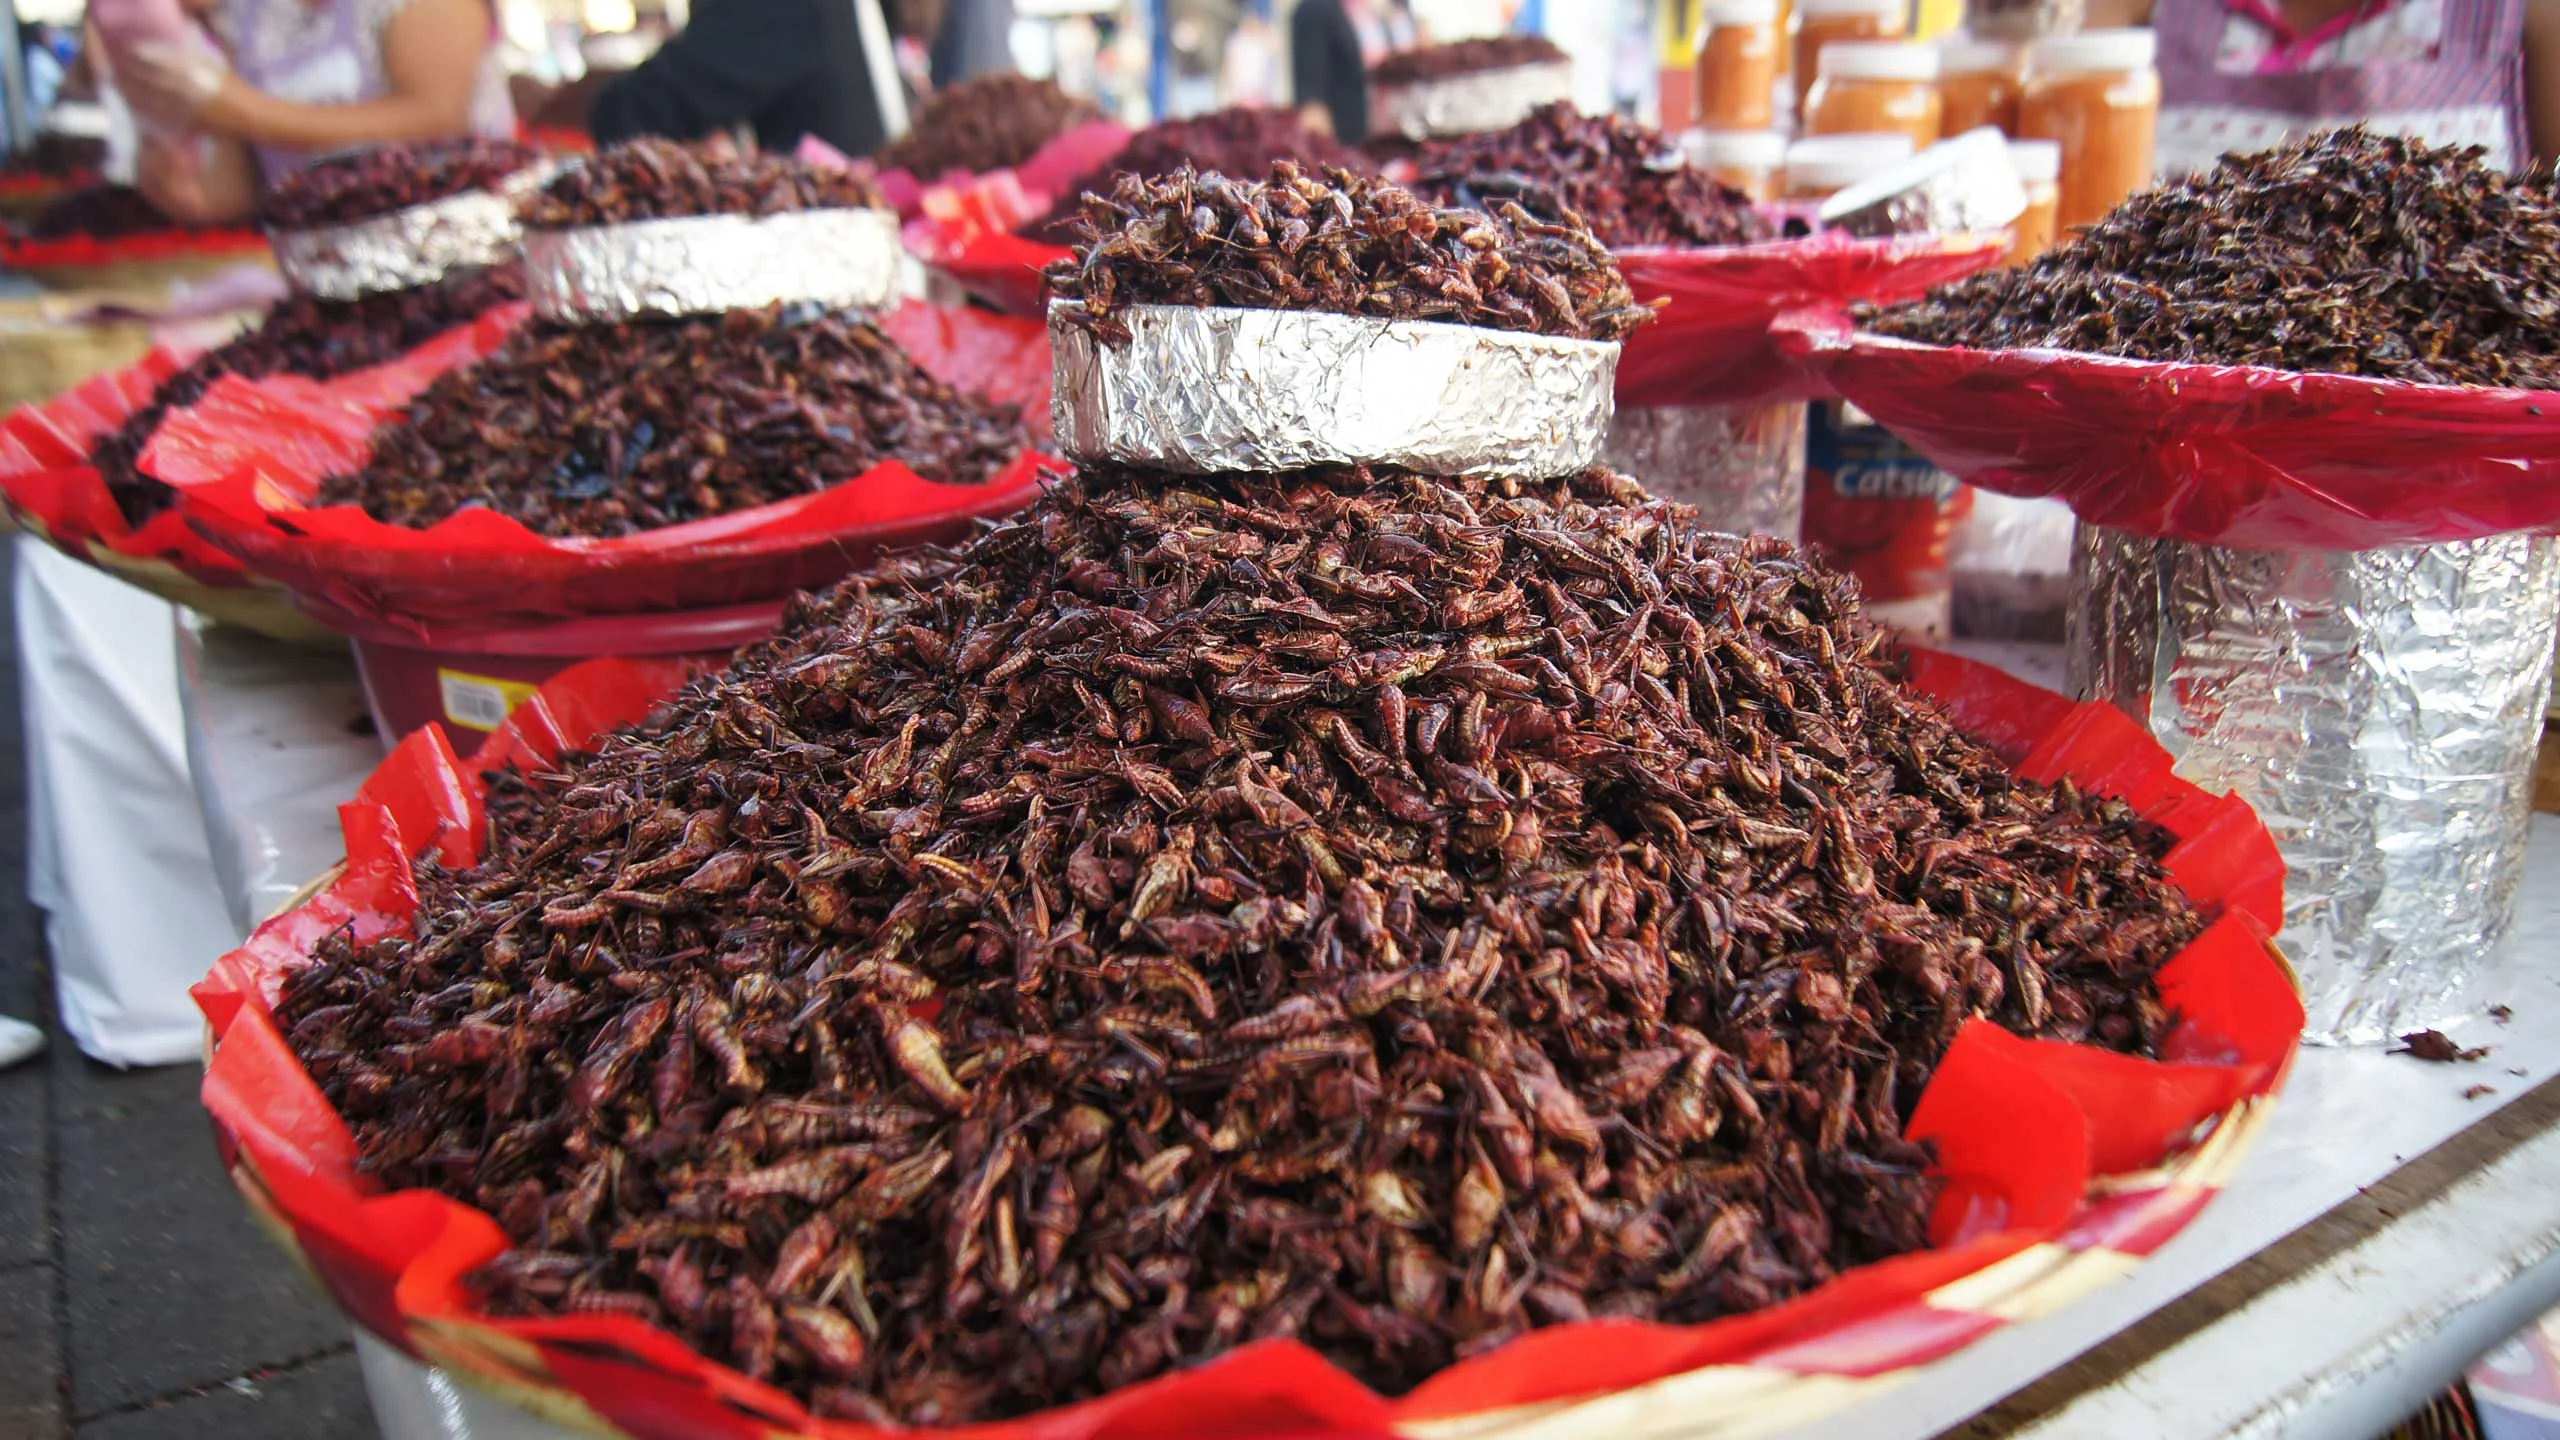 5 insectos comestibles que debes probar en México